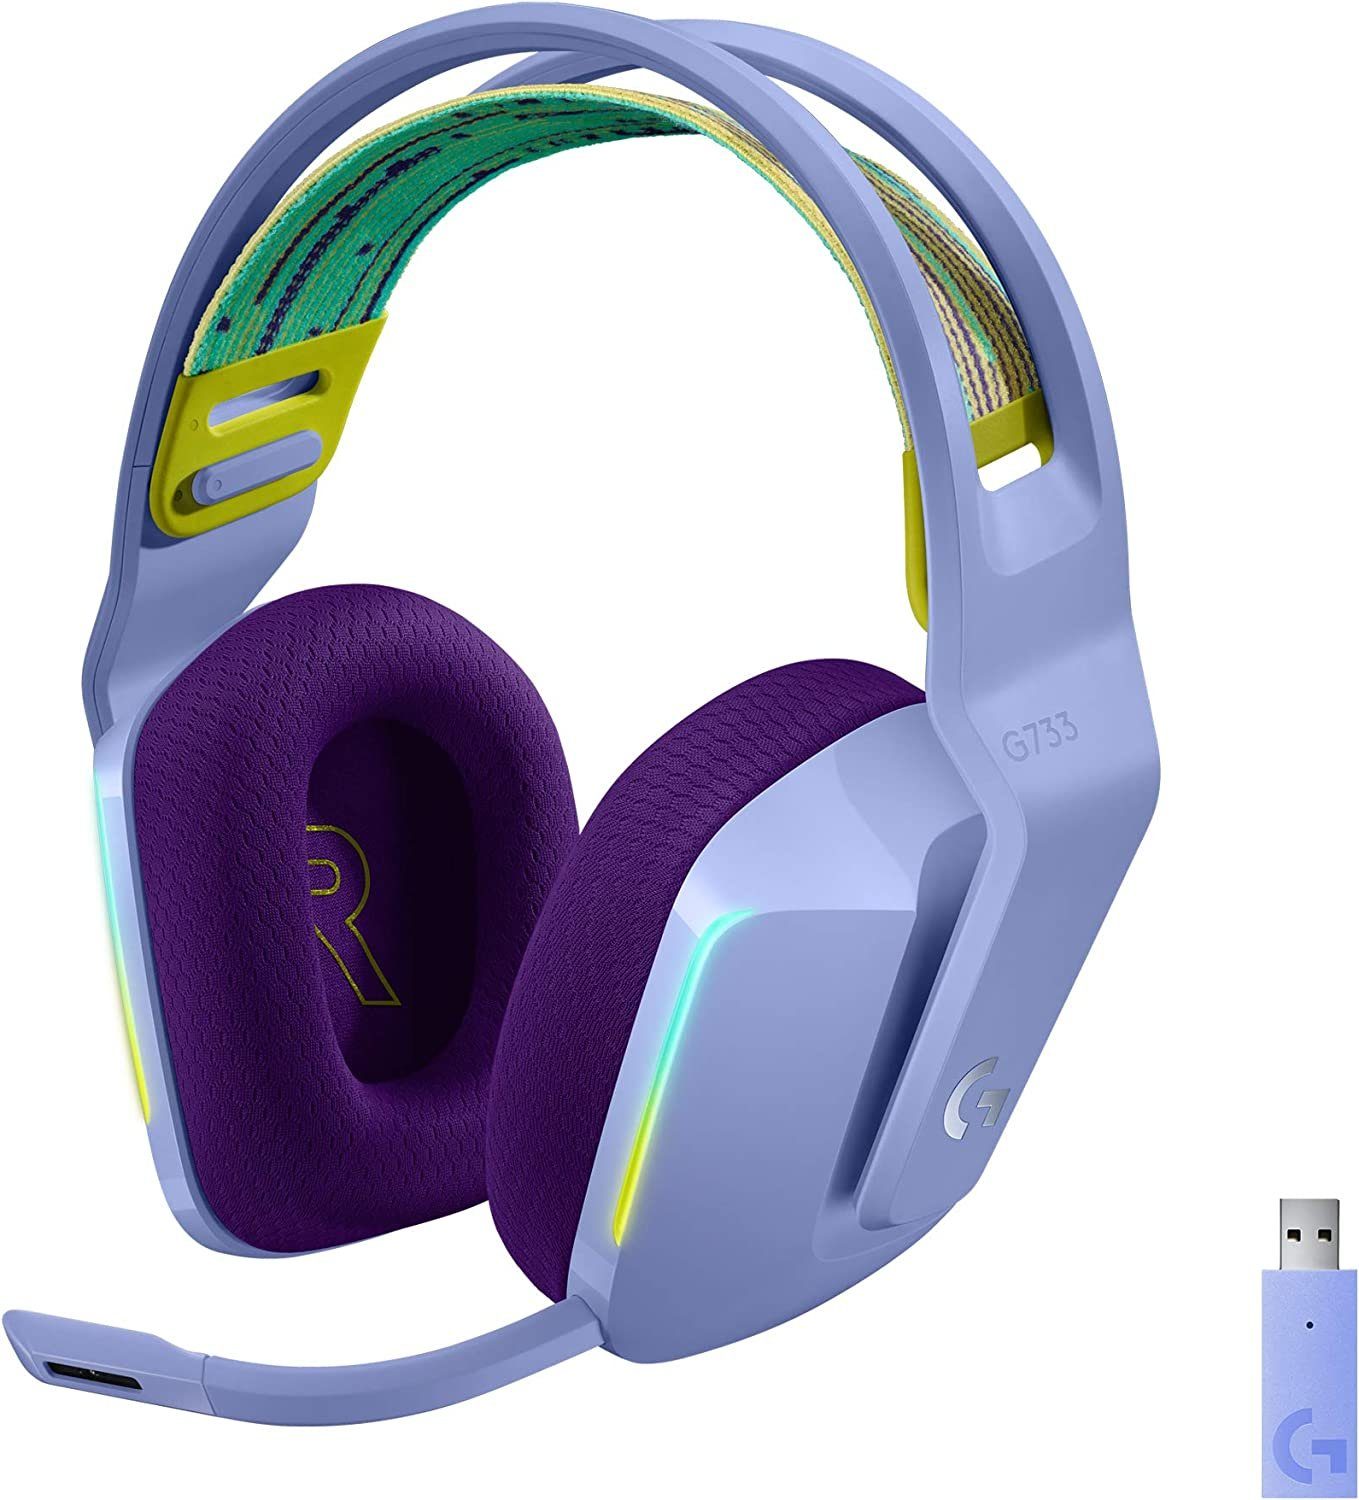 LIGHTSPEED 20m (Ultraleicht, Wireless Logitech G Mikrofon G733 beleuchtet) Gaming-Headset abnehmbar, RGB kabelloses Reichweite, Lilac